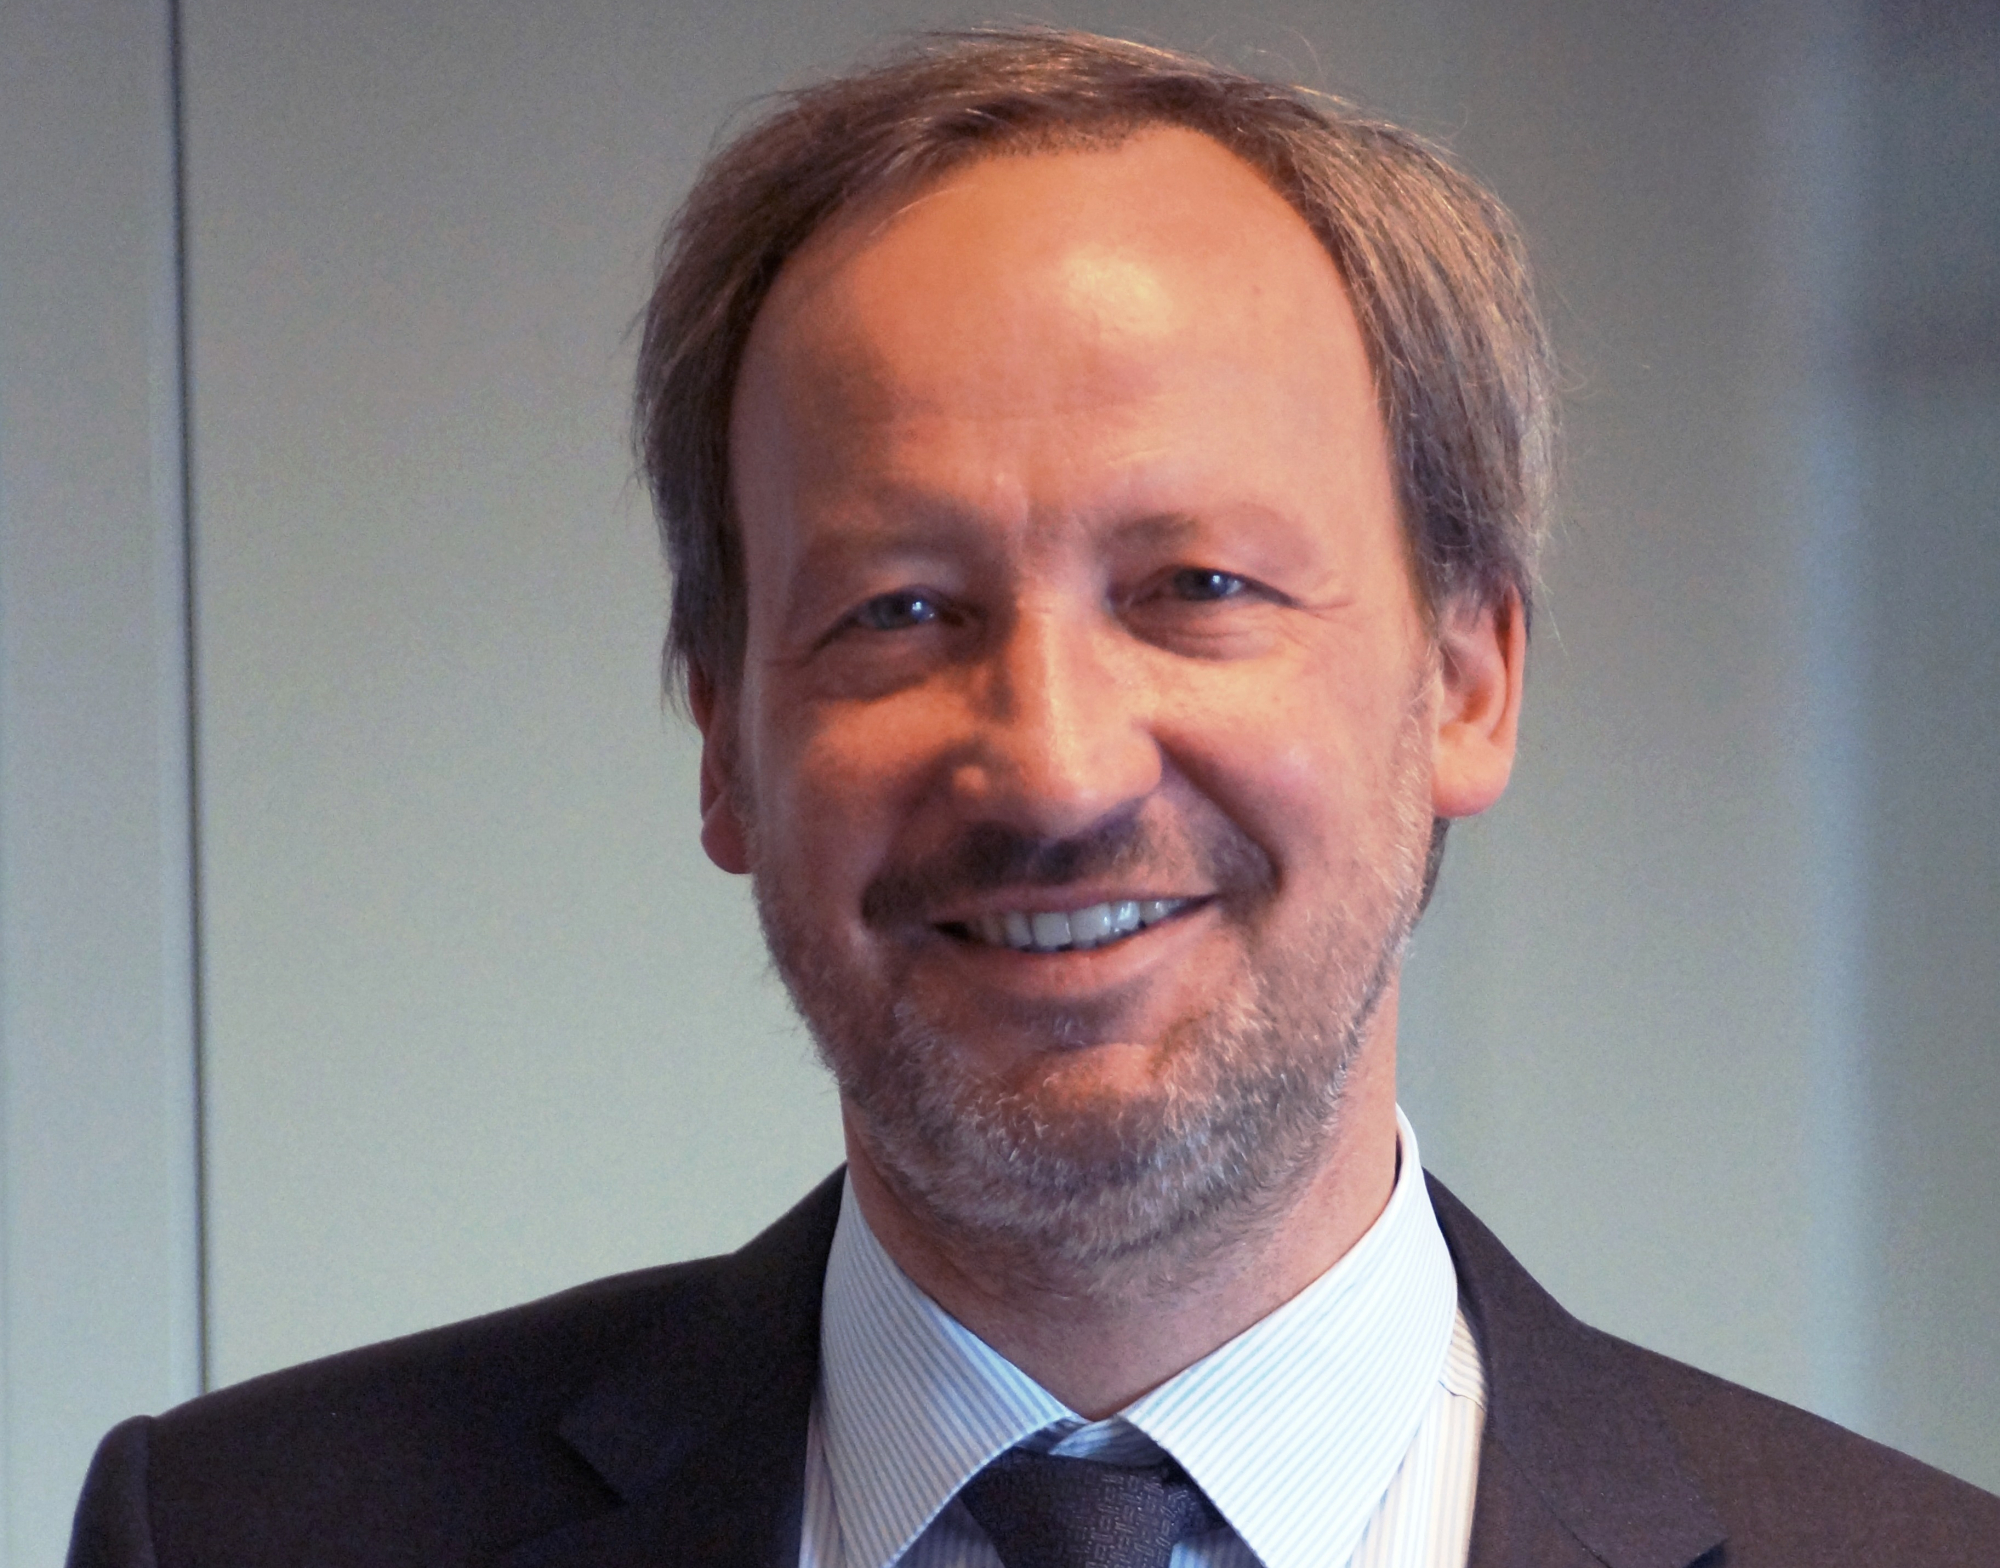 Michael Hörr est nommé Directeur Commercial Courtage d’Allianz France